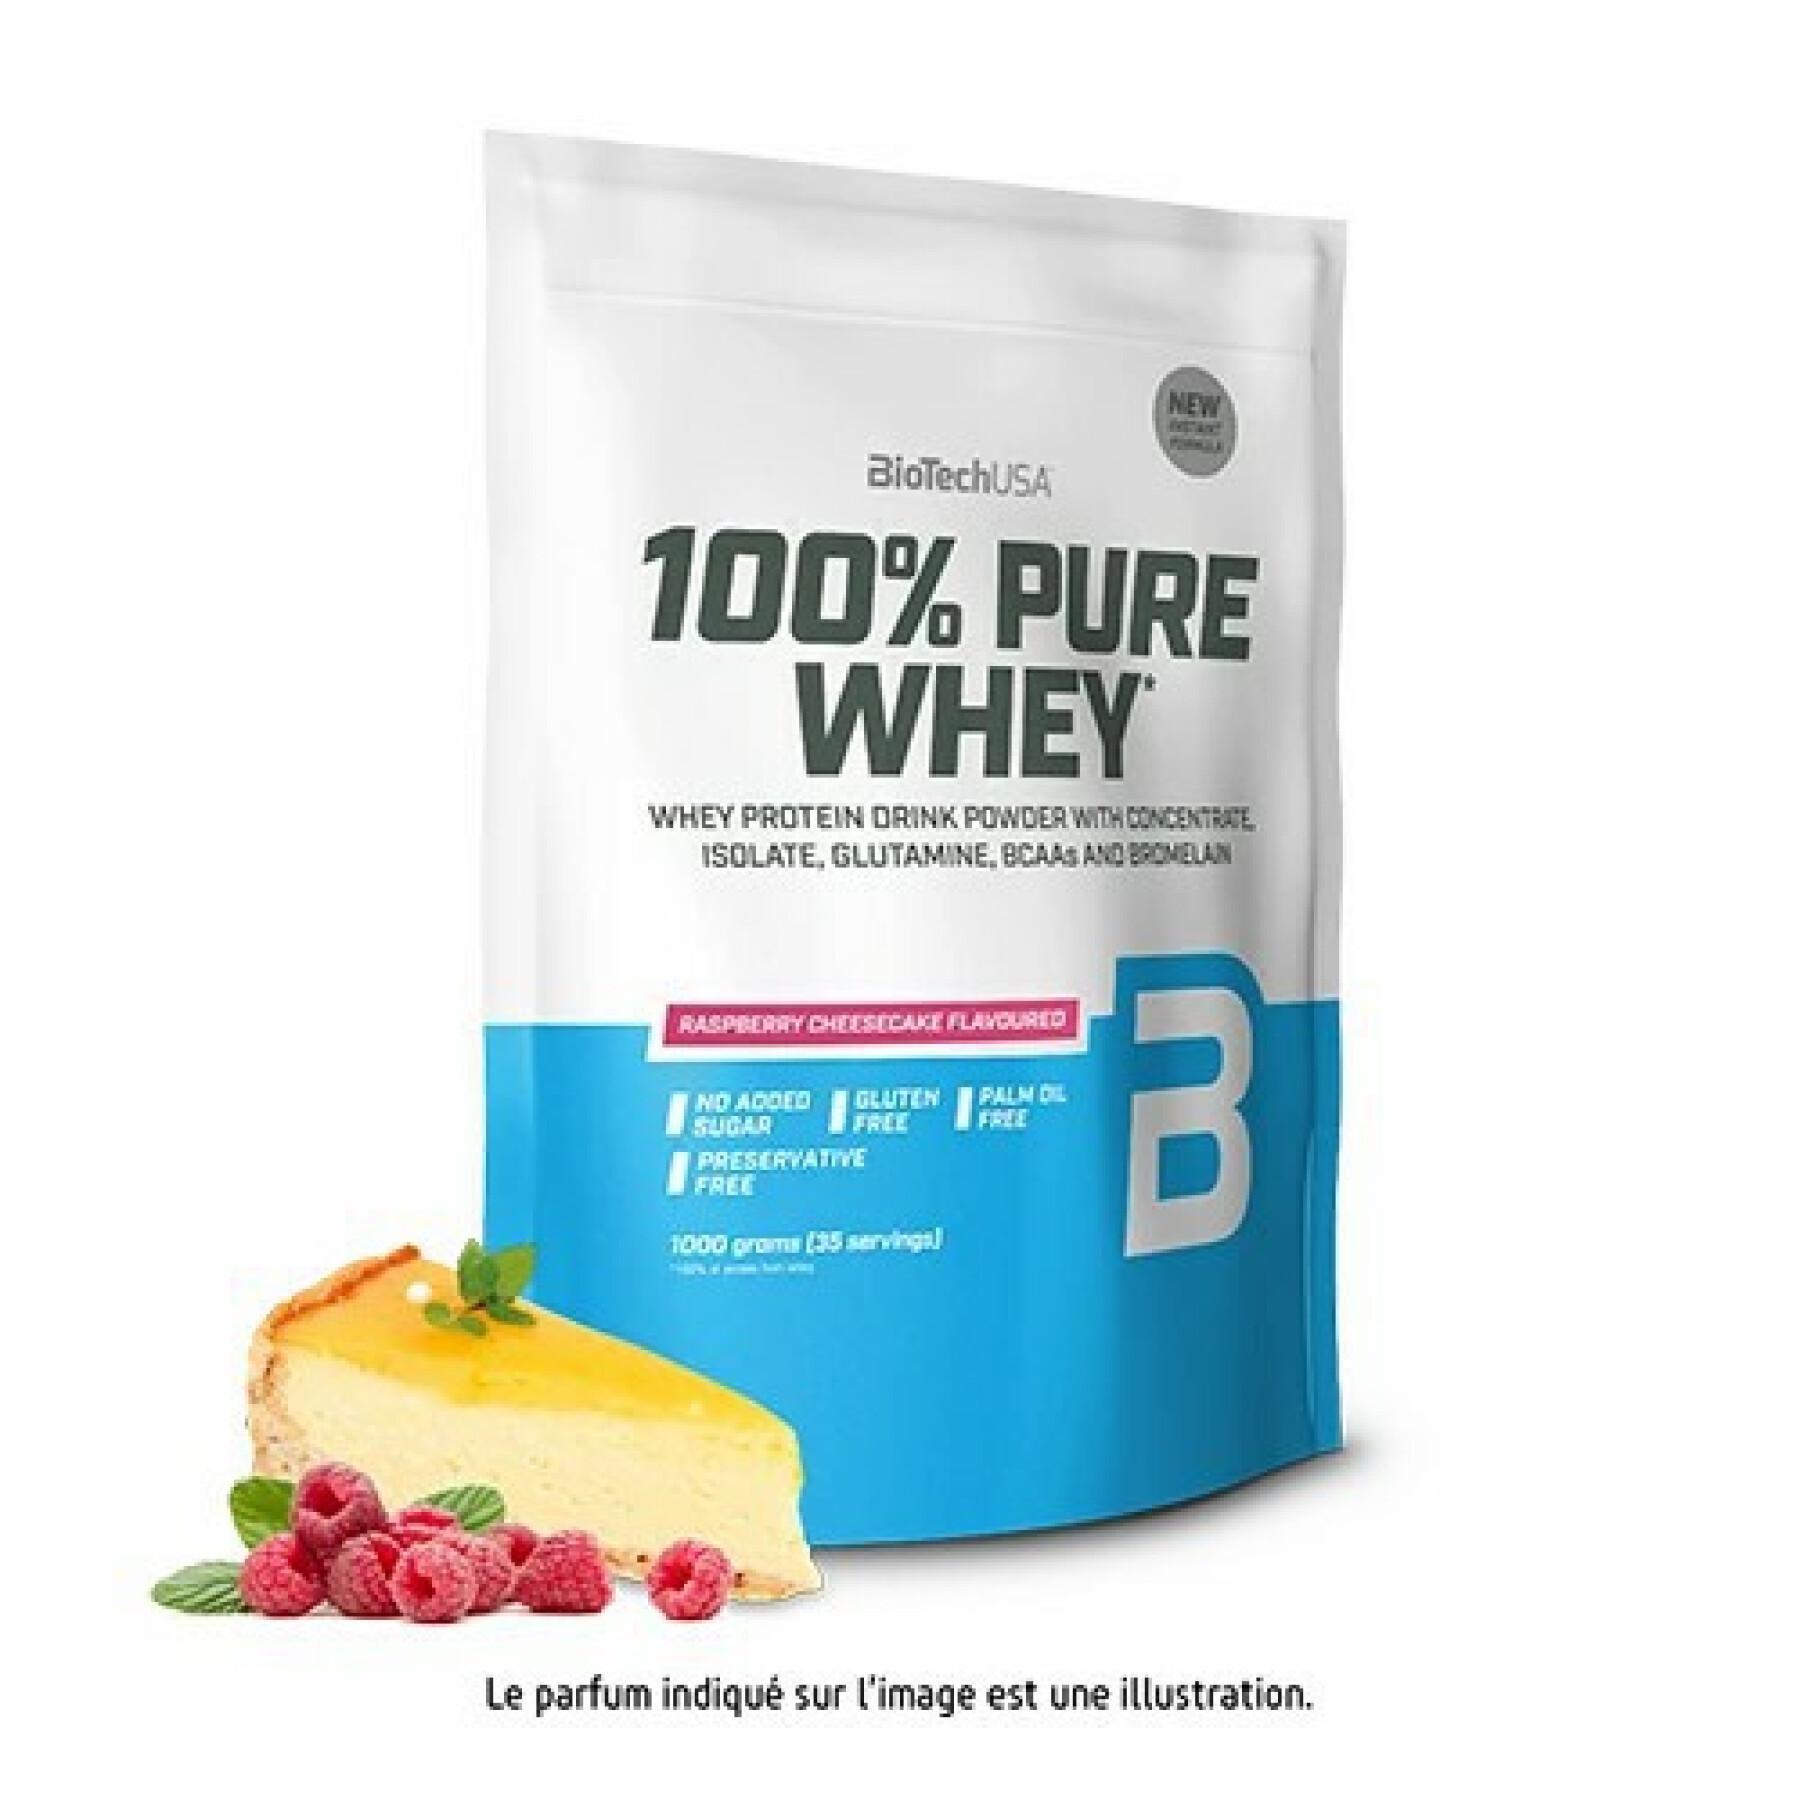 Paquete de 10 bolsas de proteína de suero 100% pura Biotech USA - Cheesecake aux frambois - 1kg